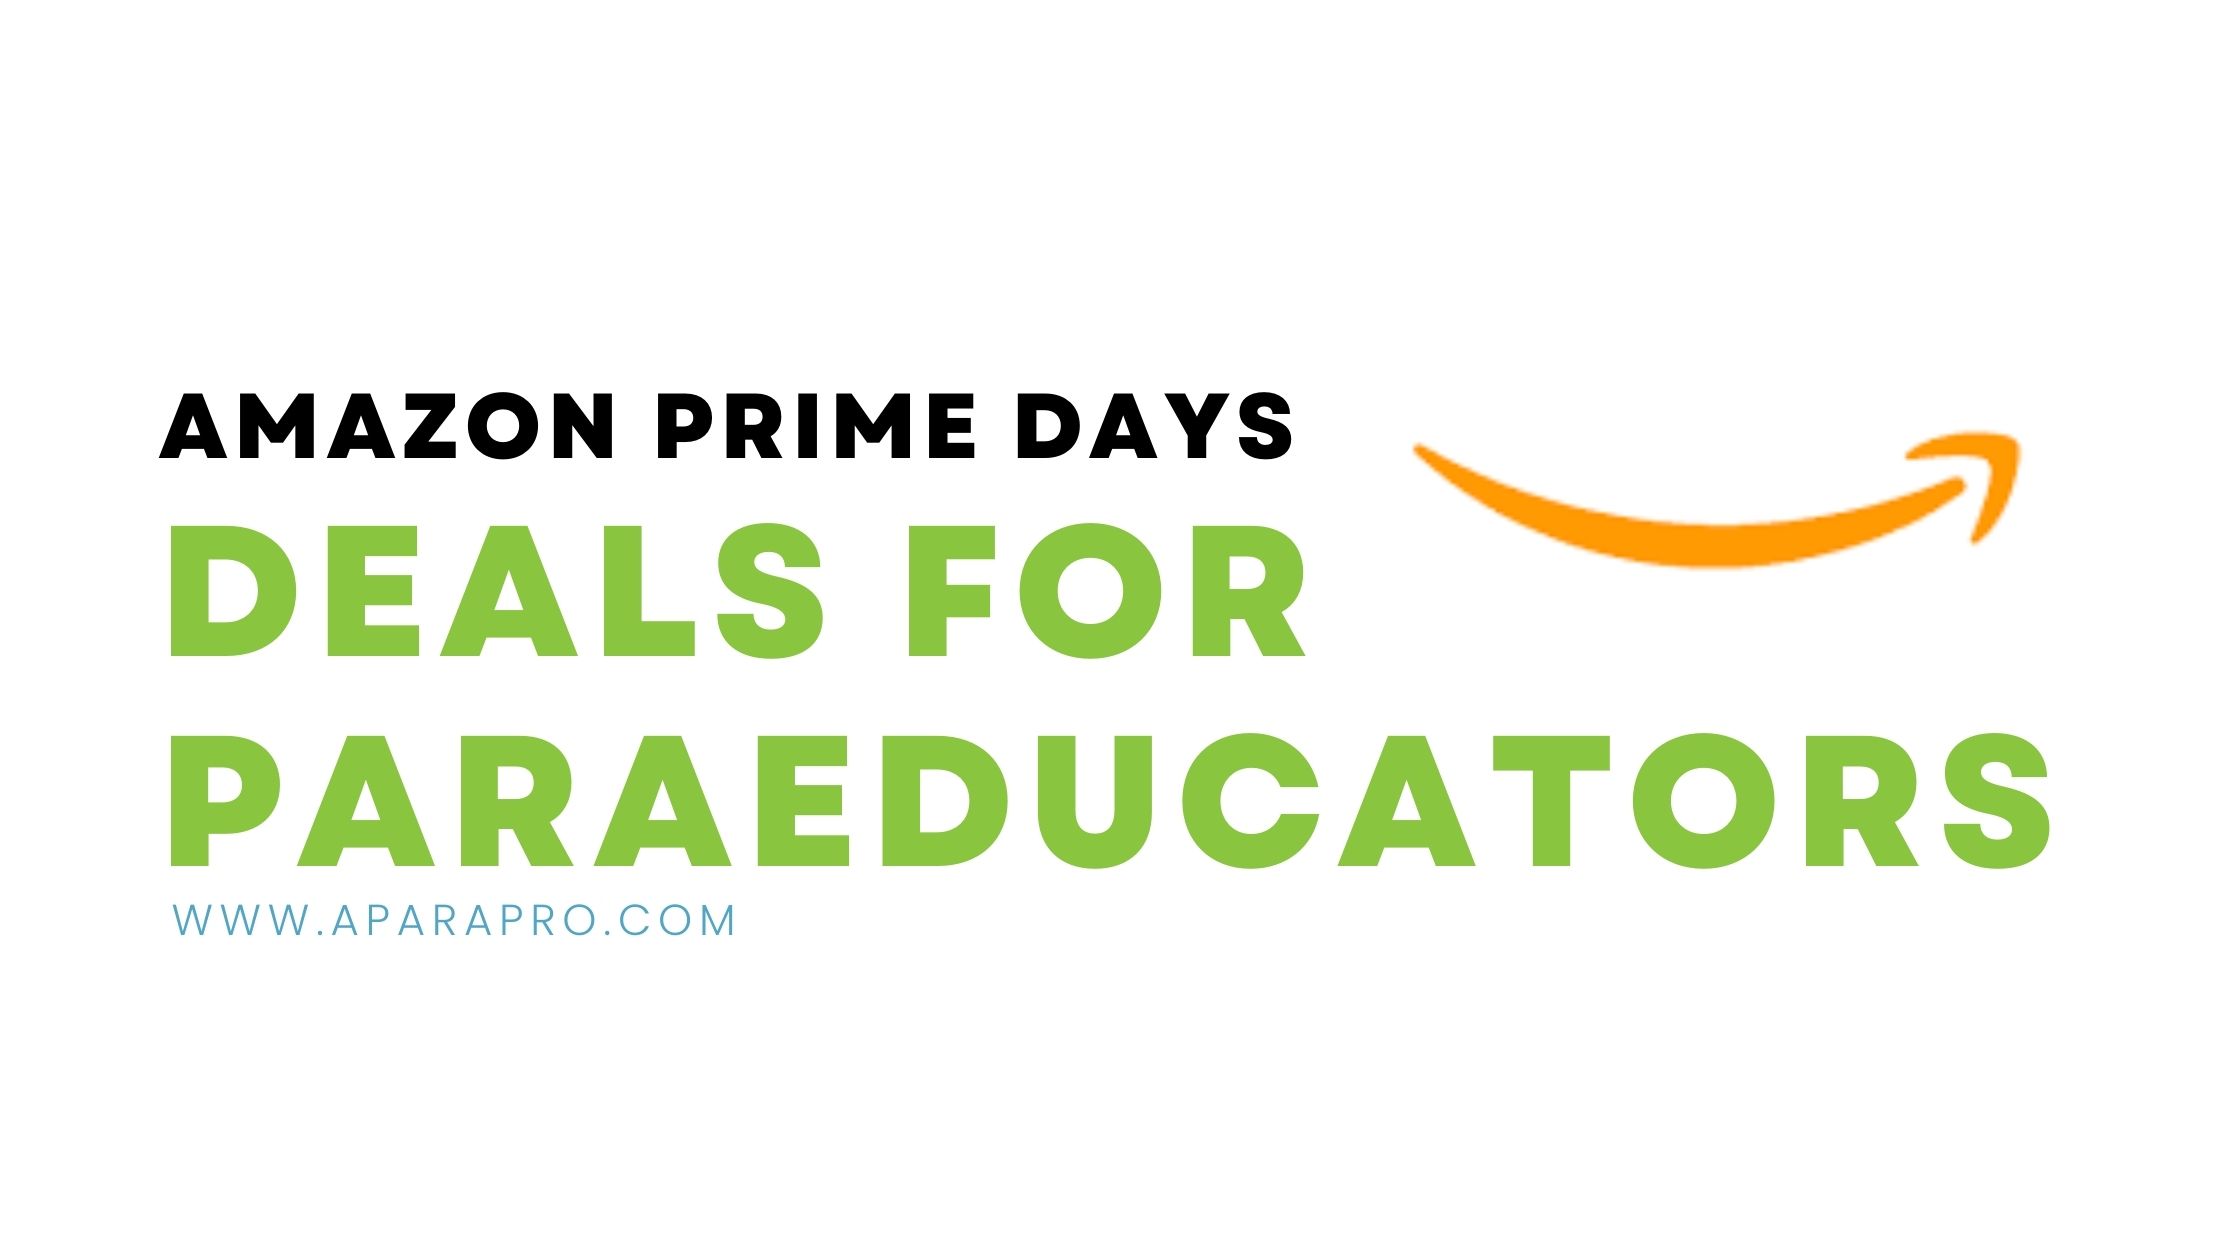 amazon prime deals for paras - a para pro featured image